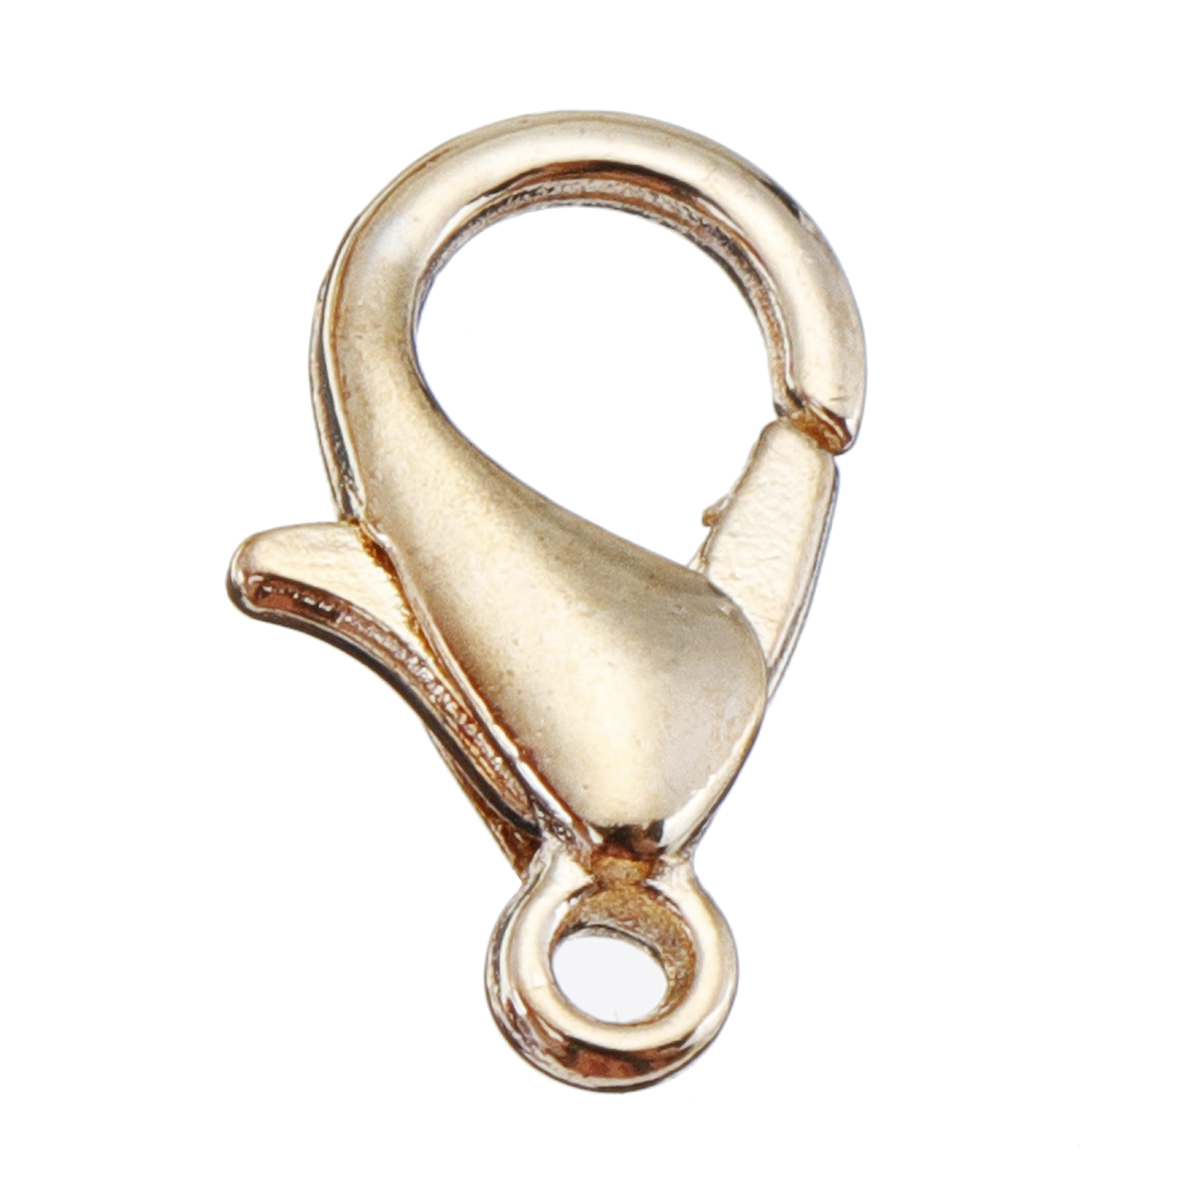 DIY-Jewelry-Making-Findings-Kit-Metal-Jump-Rings-Lobster-Clasp-Pliers-Tool-Set-1420893-9